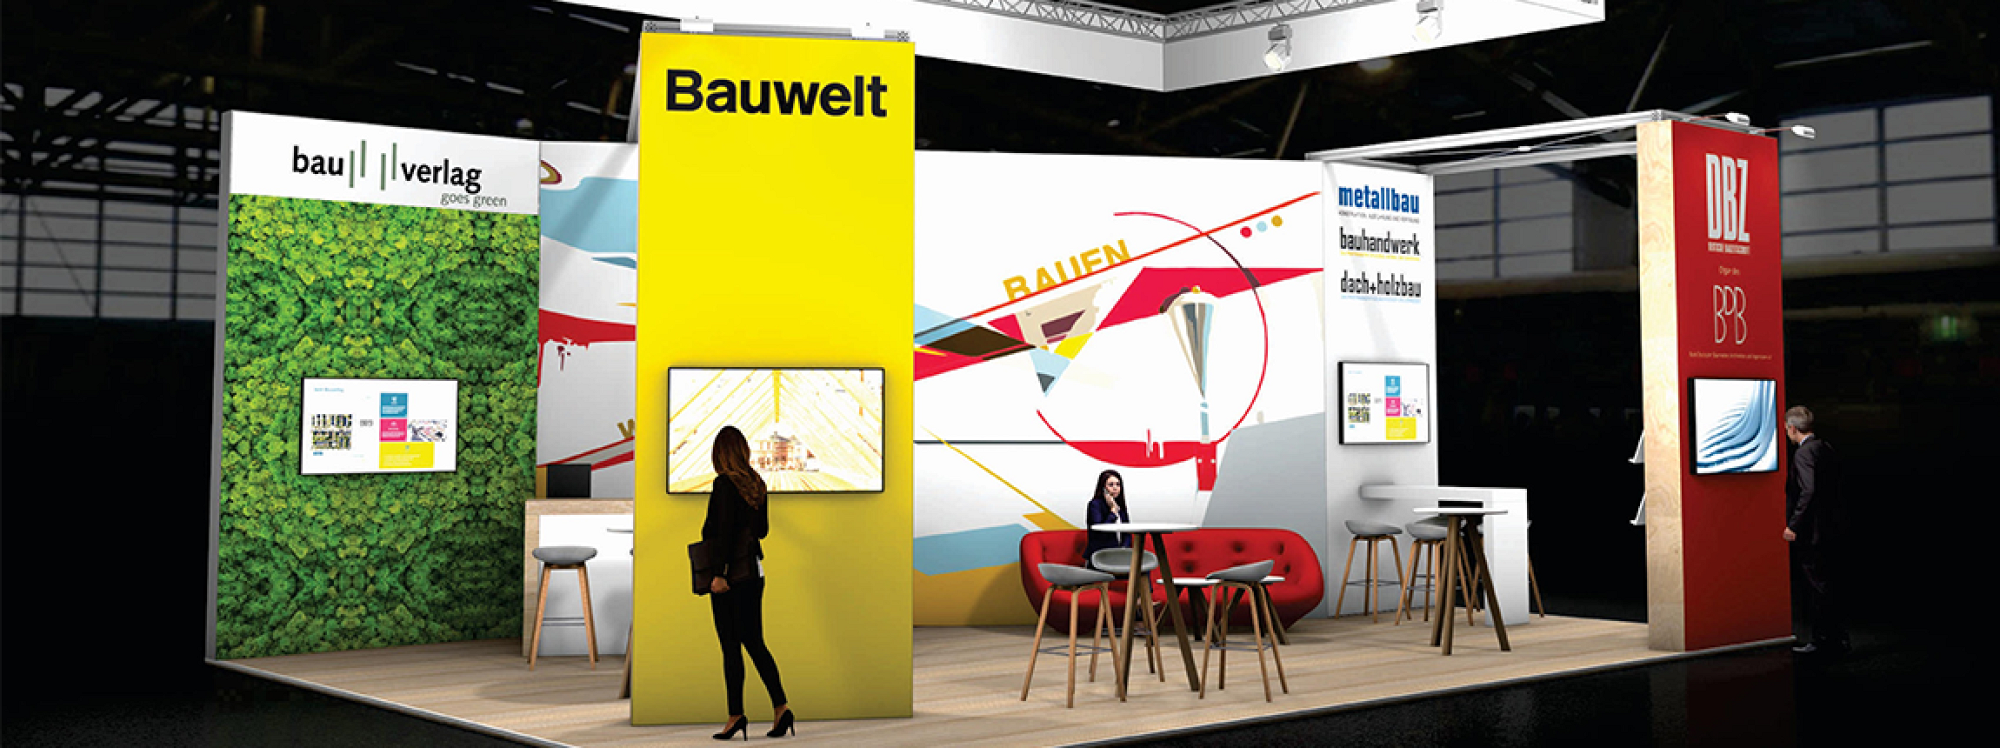 Bauverlag präsentiert sich auf der Messe BAU in München